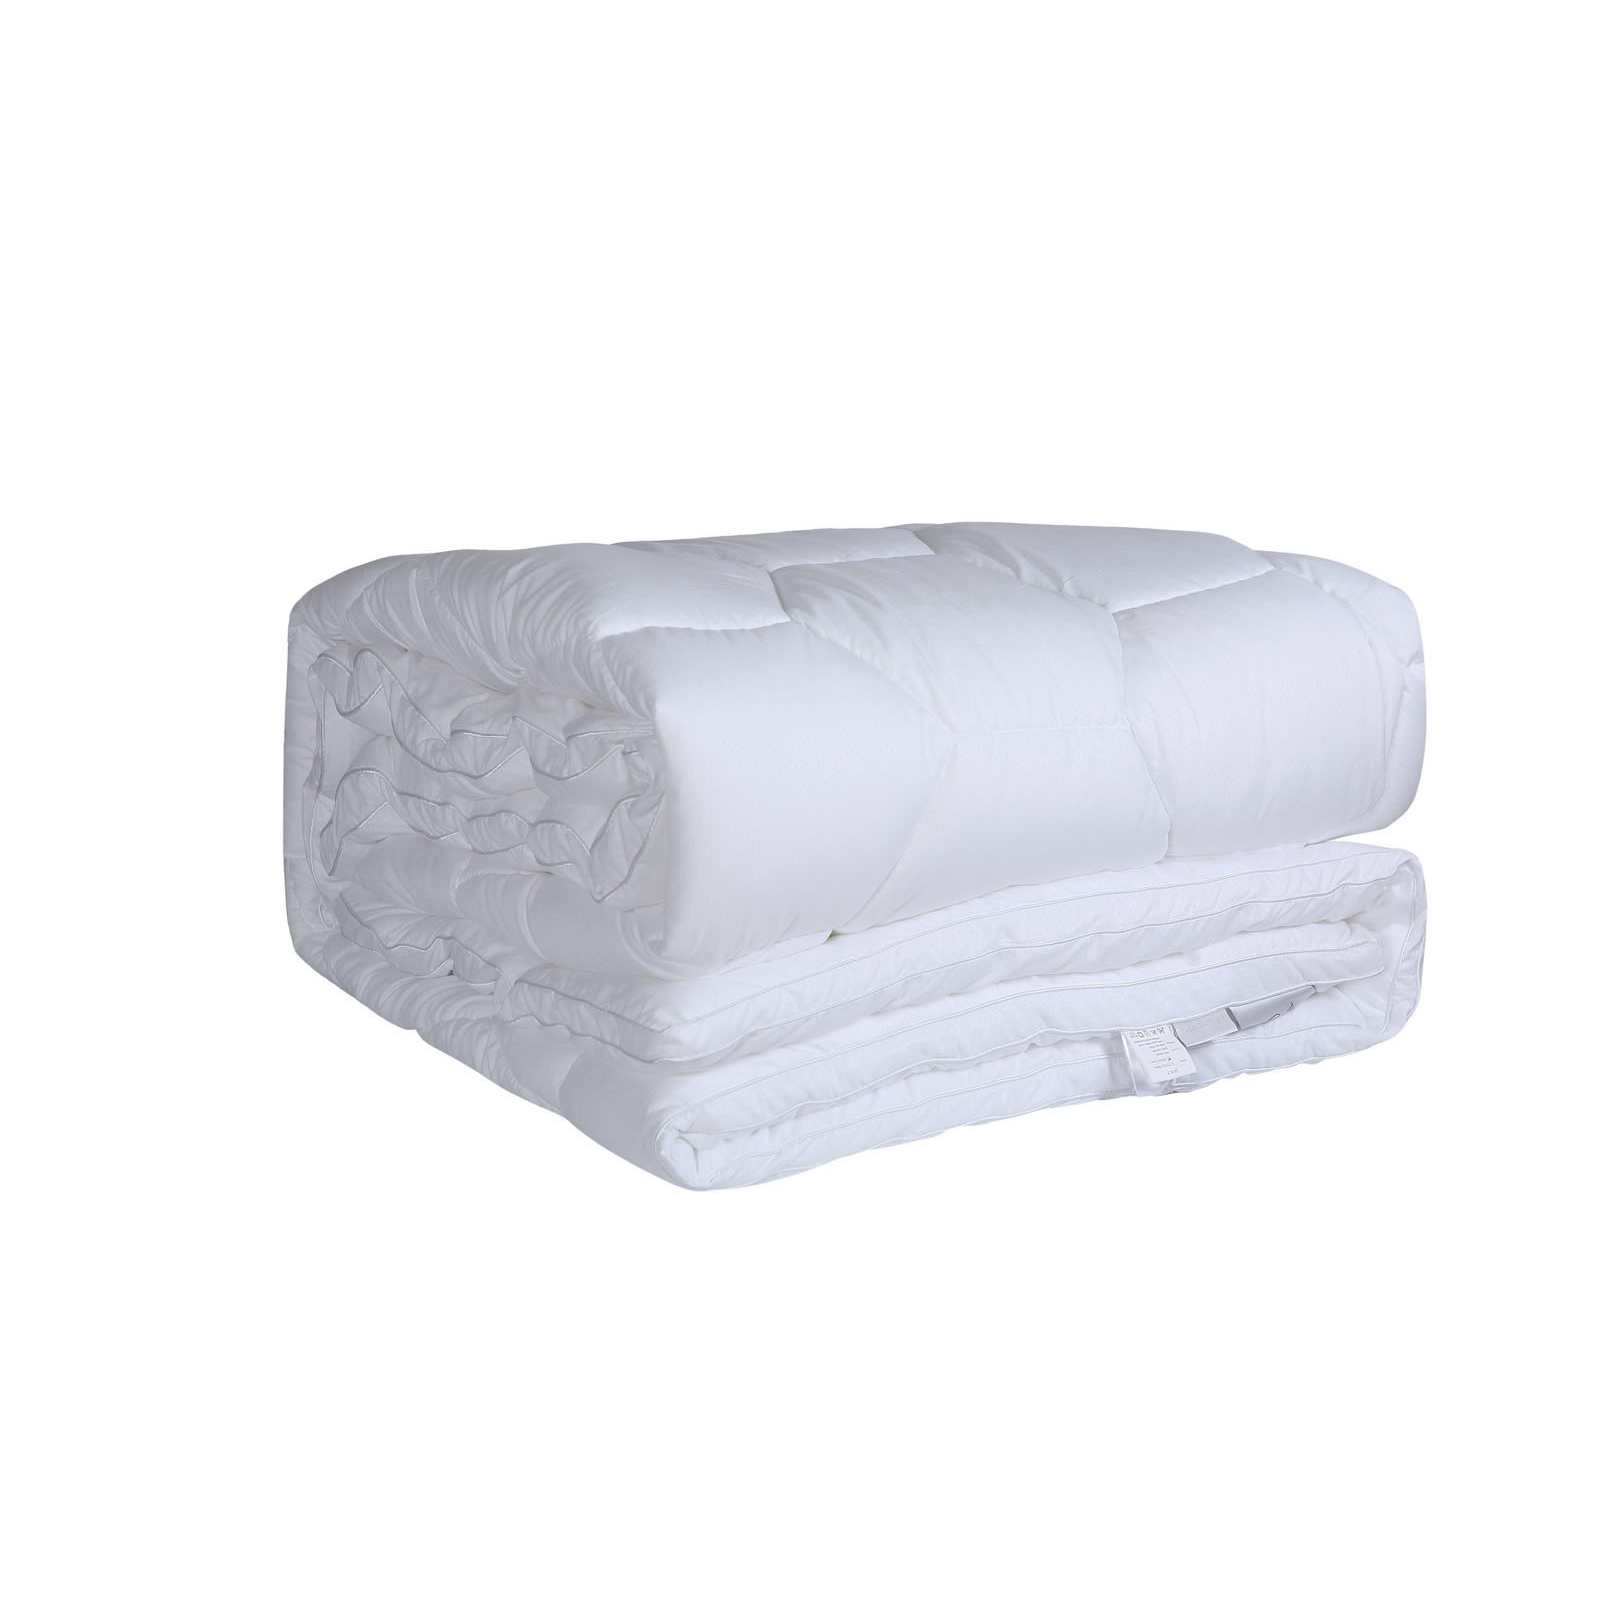 Одеяло Sofi De Marko Antibacterial 155х210 см soft silver набор antibacterial cotton towels полотенца для лица и тела 3 шт размеры 30х50 см 50х90 см 70х140 см альпийский снег белый